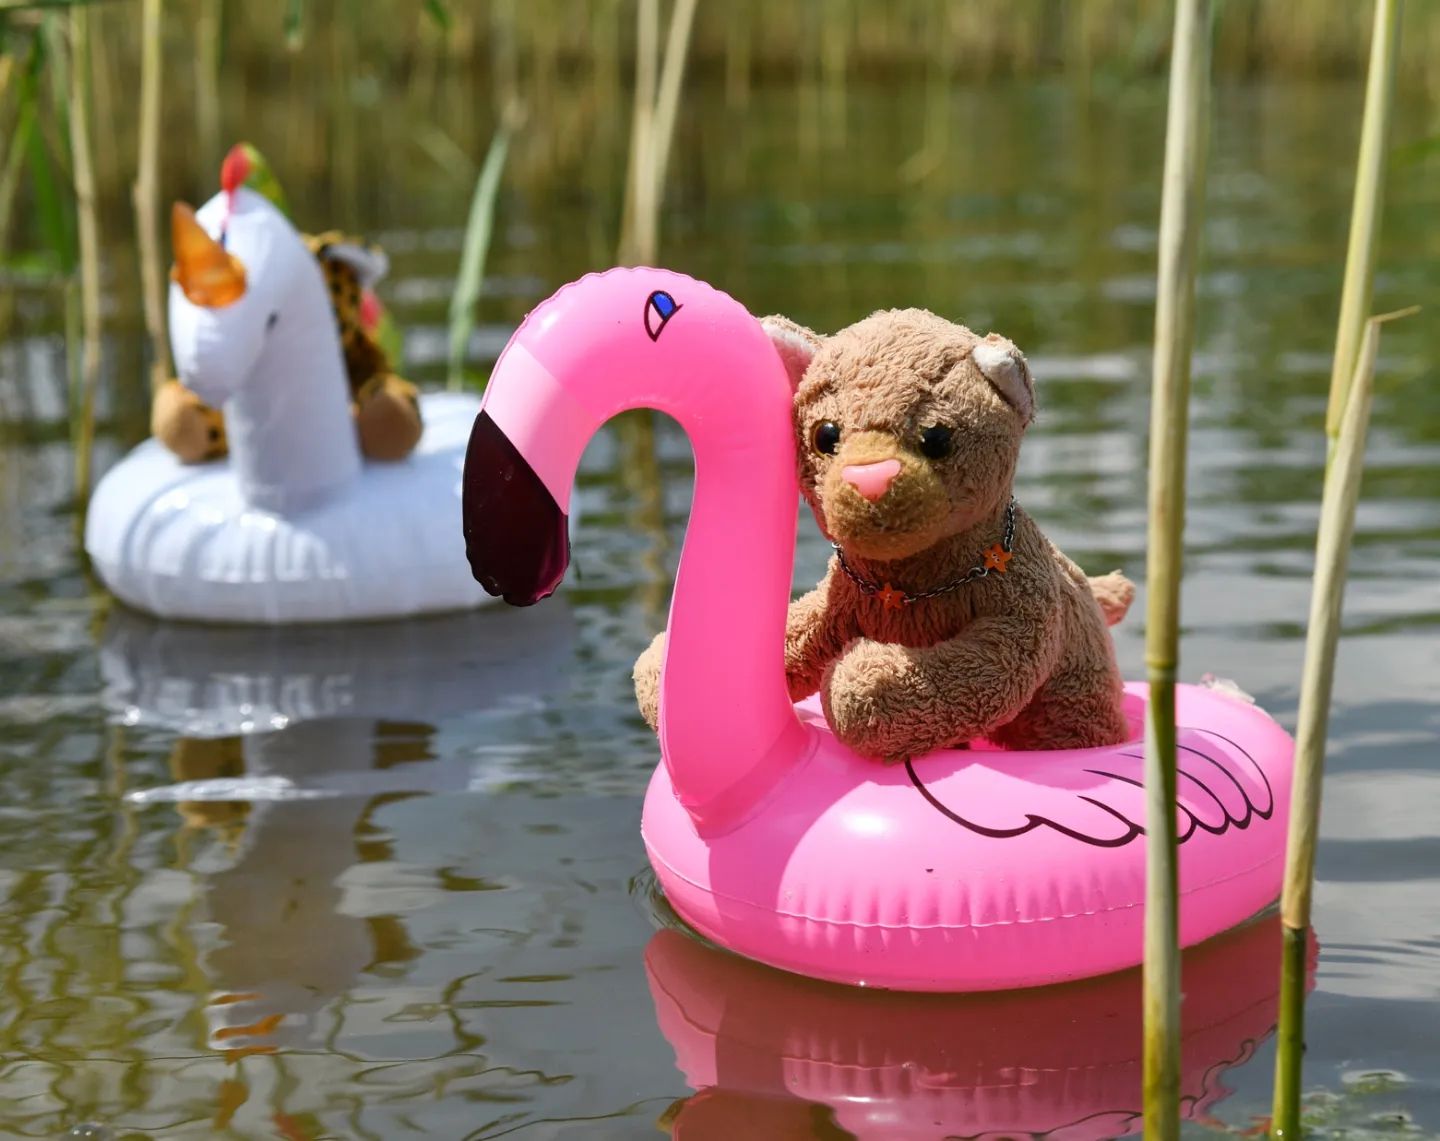 Was wäre ein Jahresrückblick ohne die vielen Ausritte auf dem Flamingo? Ja, Swede ließ keinen See, keinen Bach, keinen Pool, keinen Brunnen, kein Meer ungenutzt, um ihren Flamingo zu Wasser zu lassen.🇬🇧What would be a review of the year without the many rides on the flamingo? Yes, Swede left no lake, no stream, no pool, no well, no sea unused to launch her flamingo. #Floatie  #Flamingo  #Flamingofloatie  #Schwimmtier  #Jahresrueckblick  #Review  #Retrospective  #JubaOnTour  #LifeAsAPlushie  #Throwback